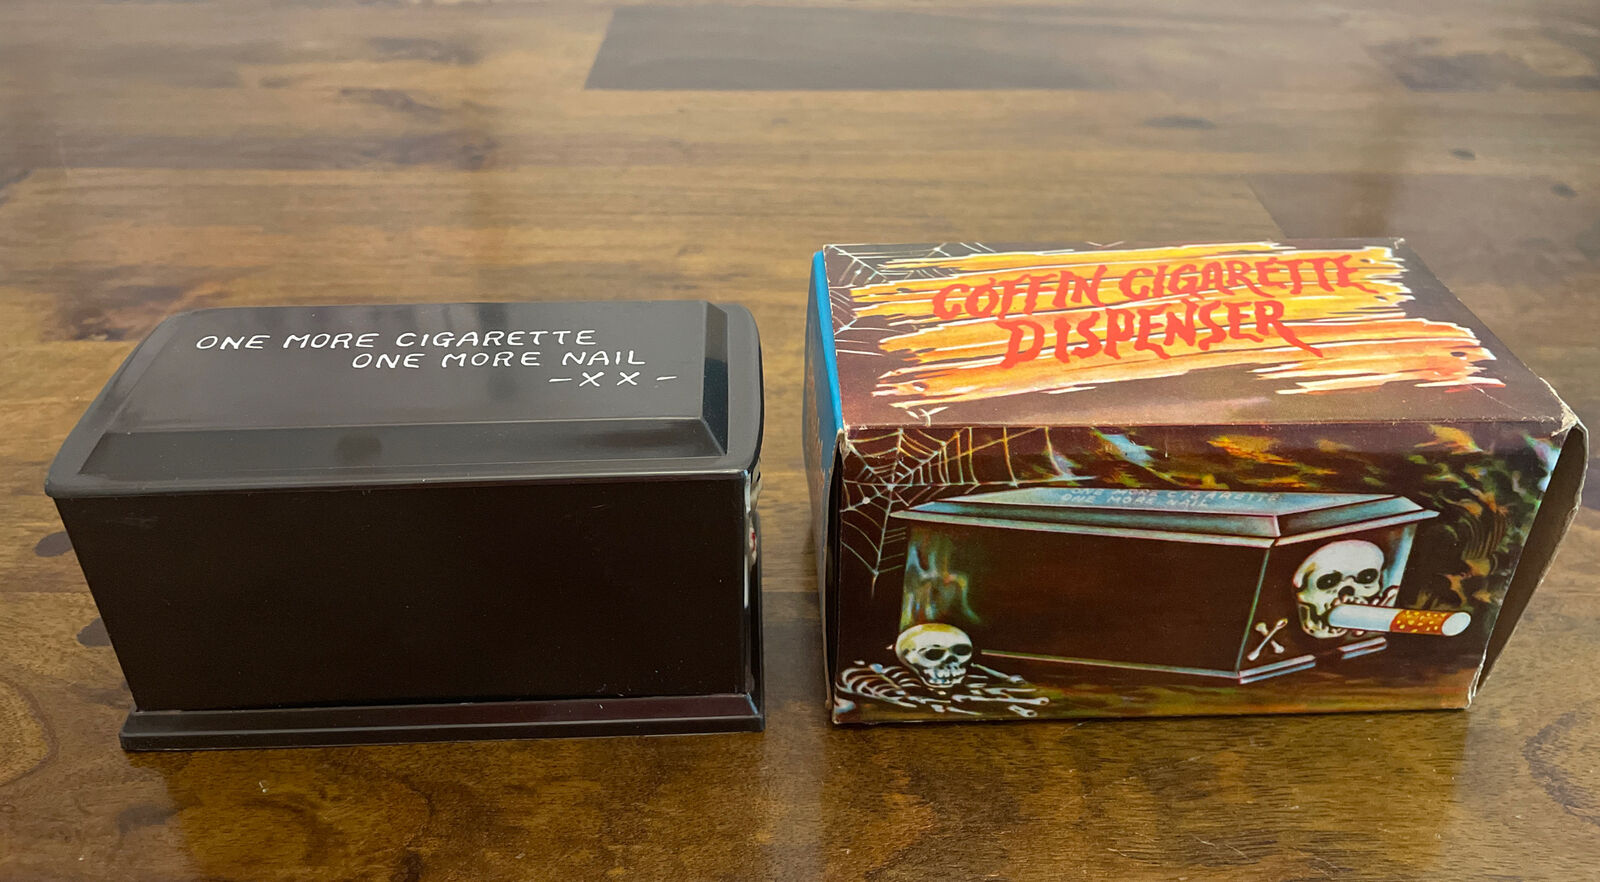 RARE Vintage Novelty “One More Cigarette” Devil Coffin Cigarette Dispenser W/Box